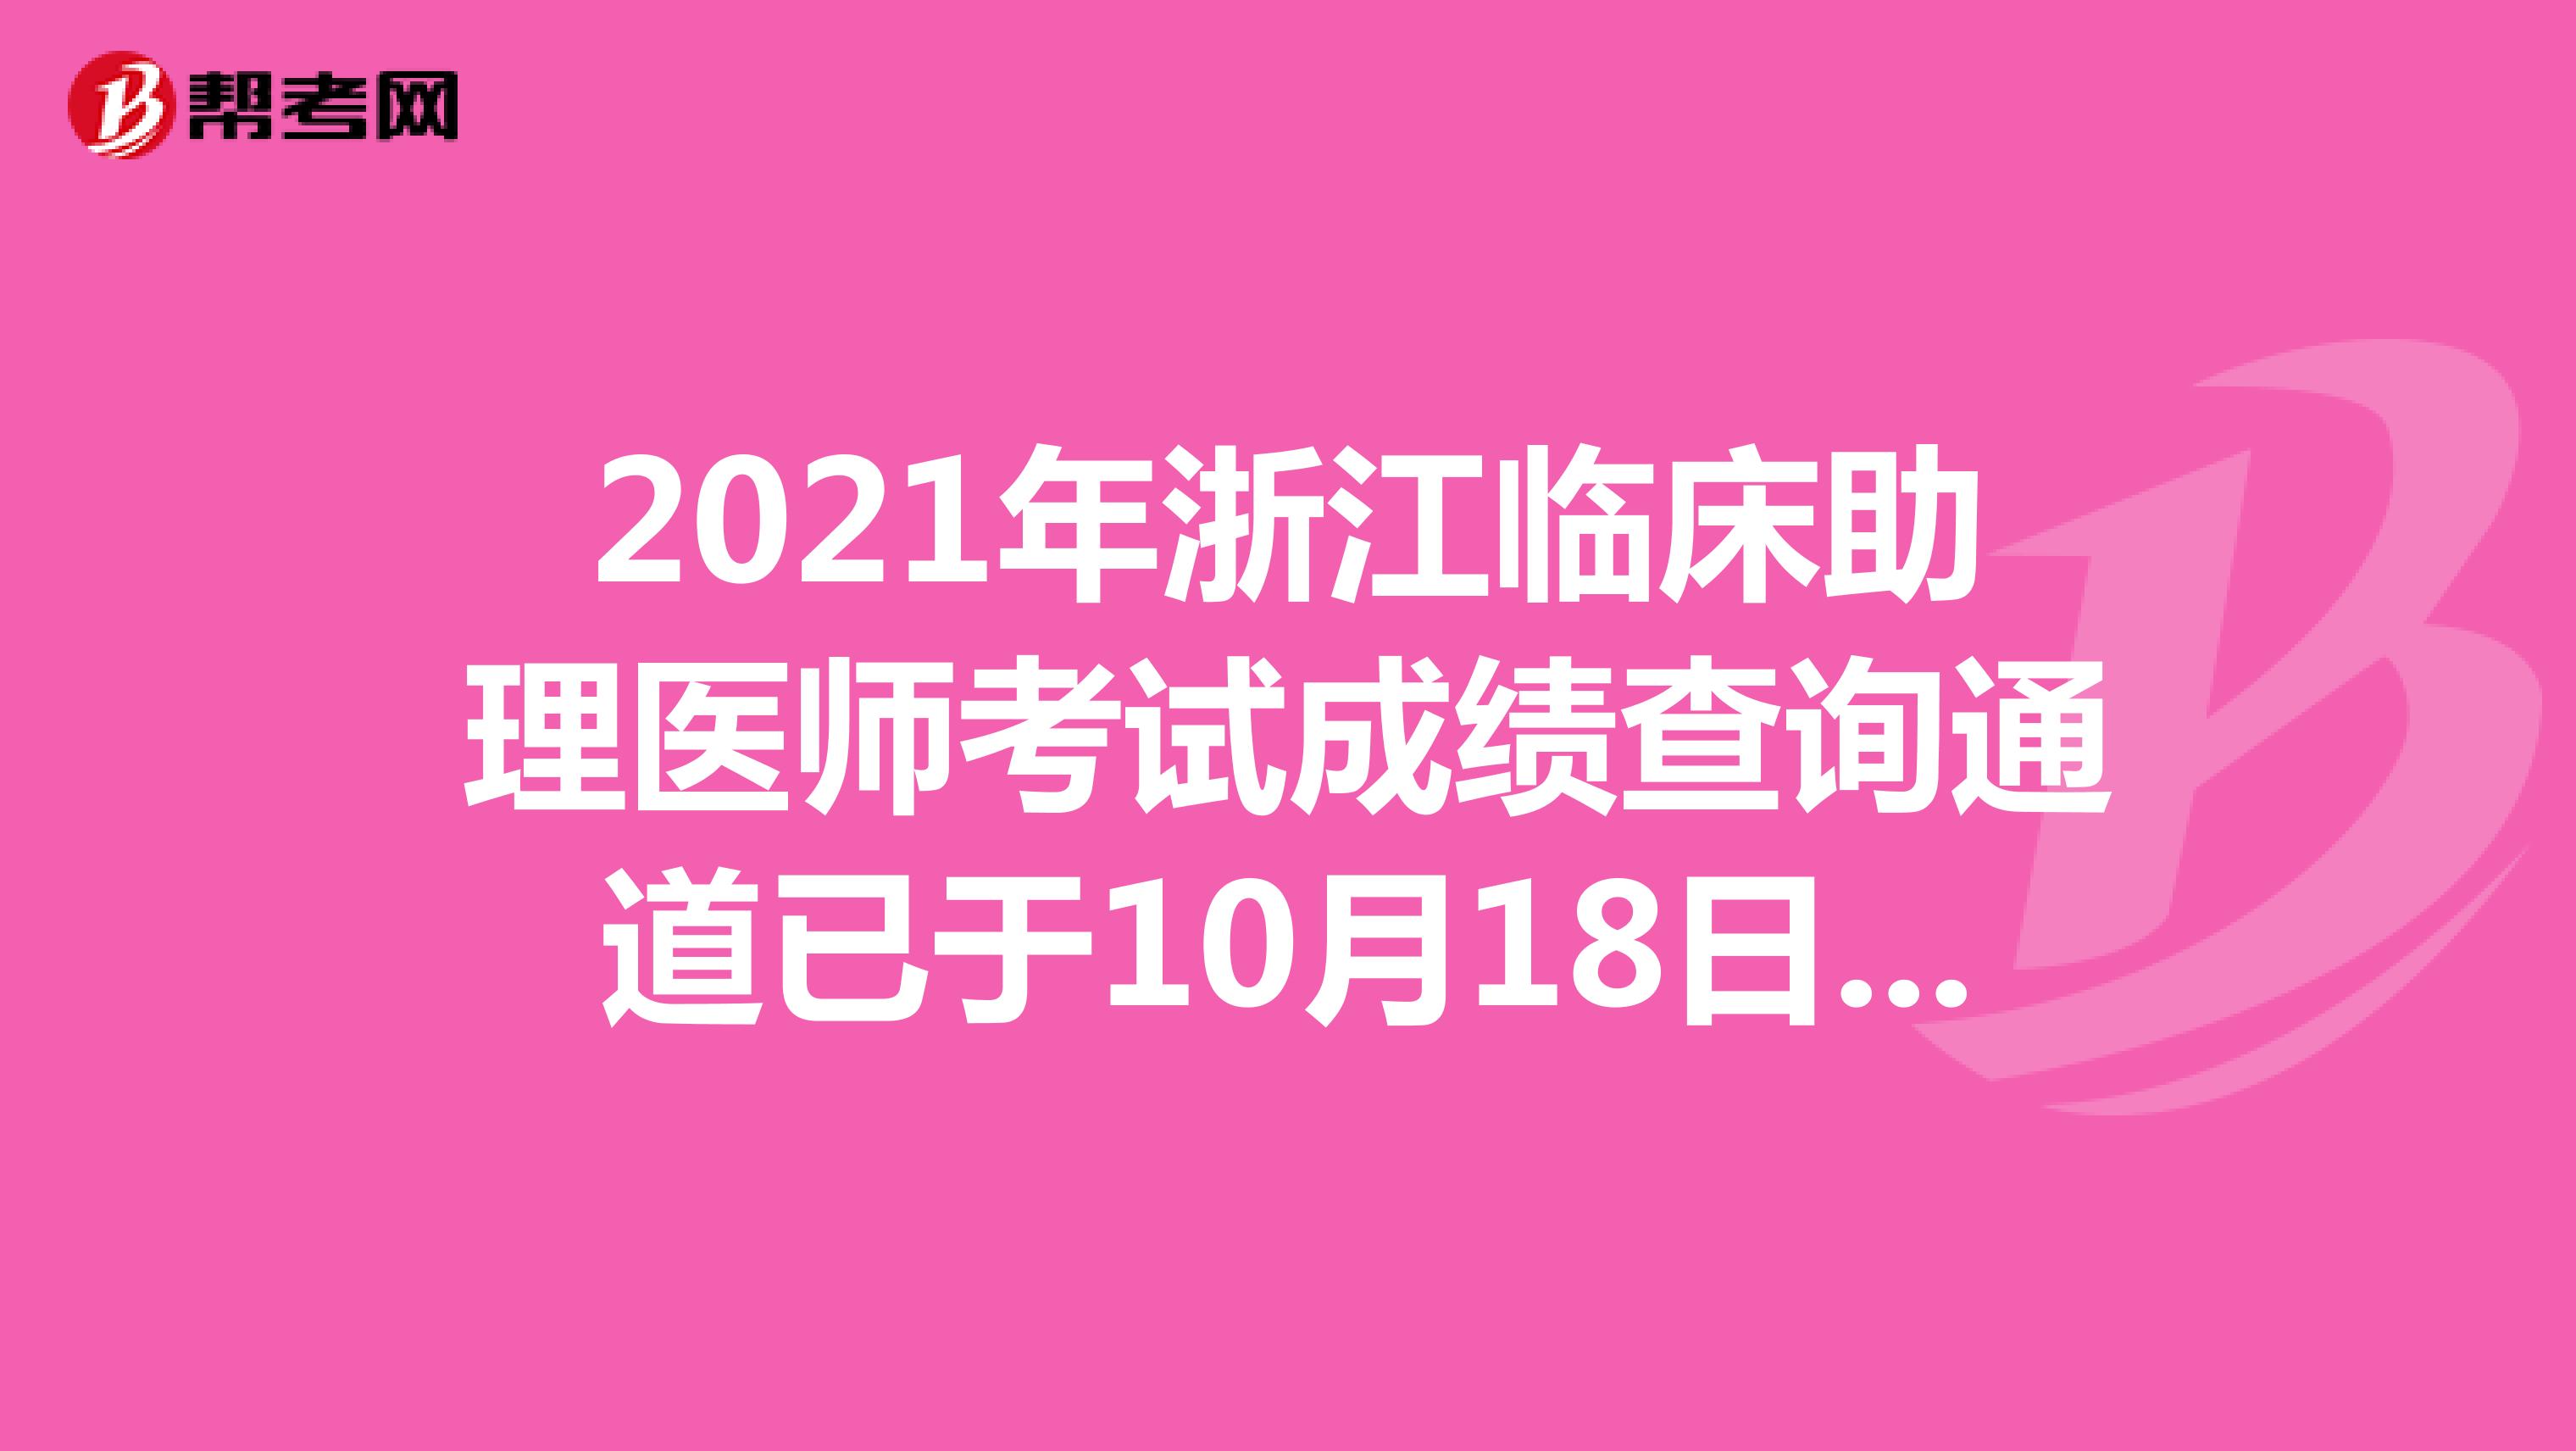 2021浙江临床助理医师考试成绩查询通道已于10月18日开通